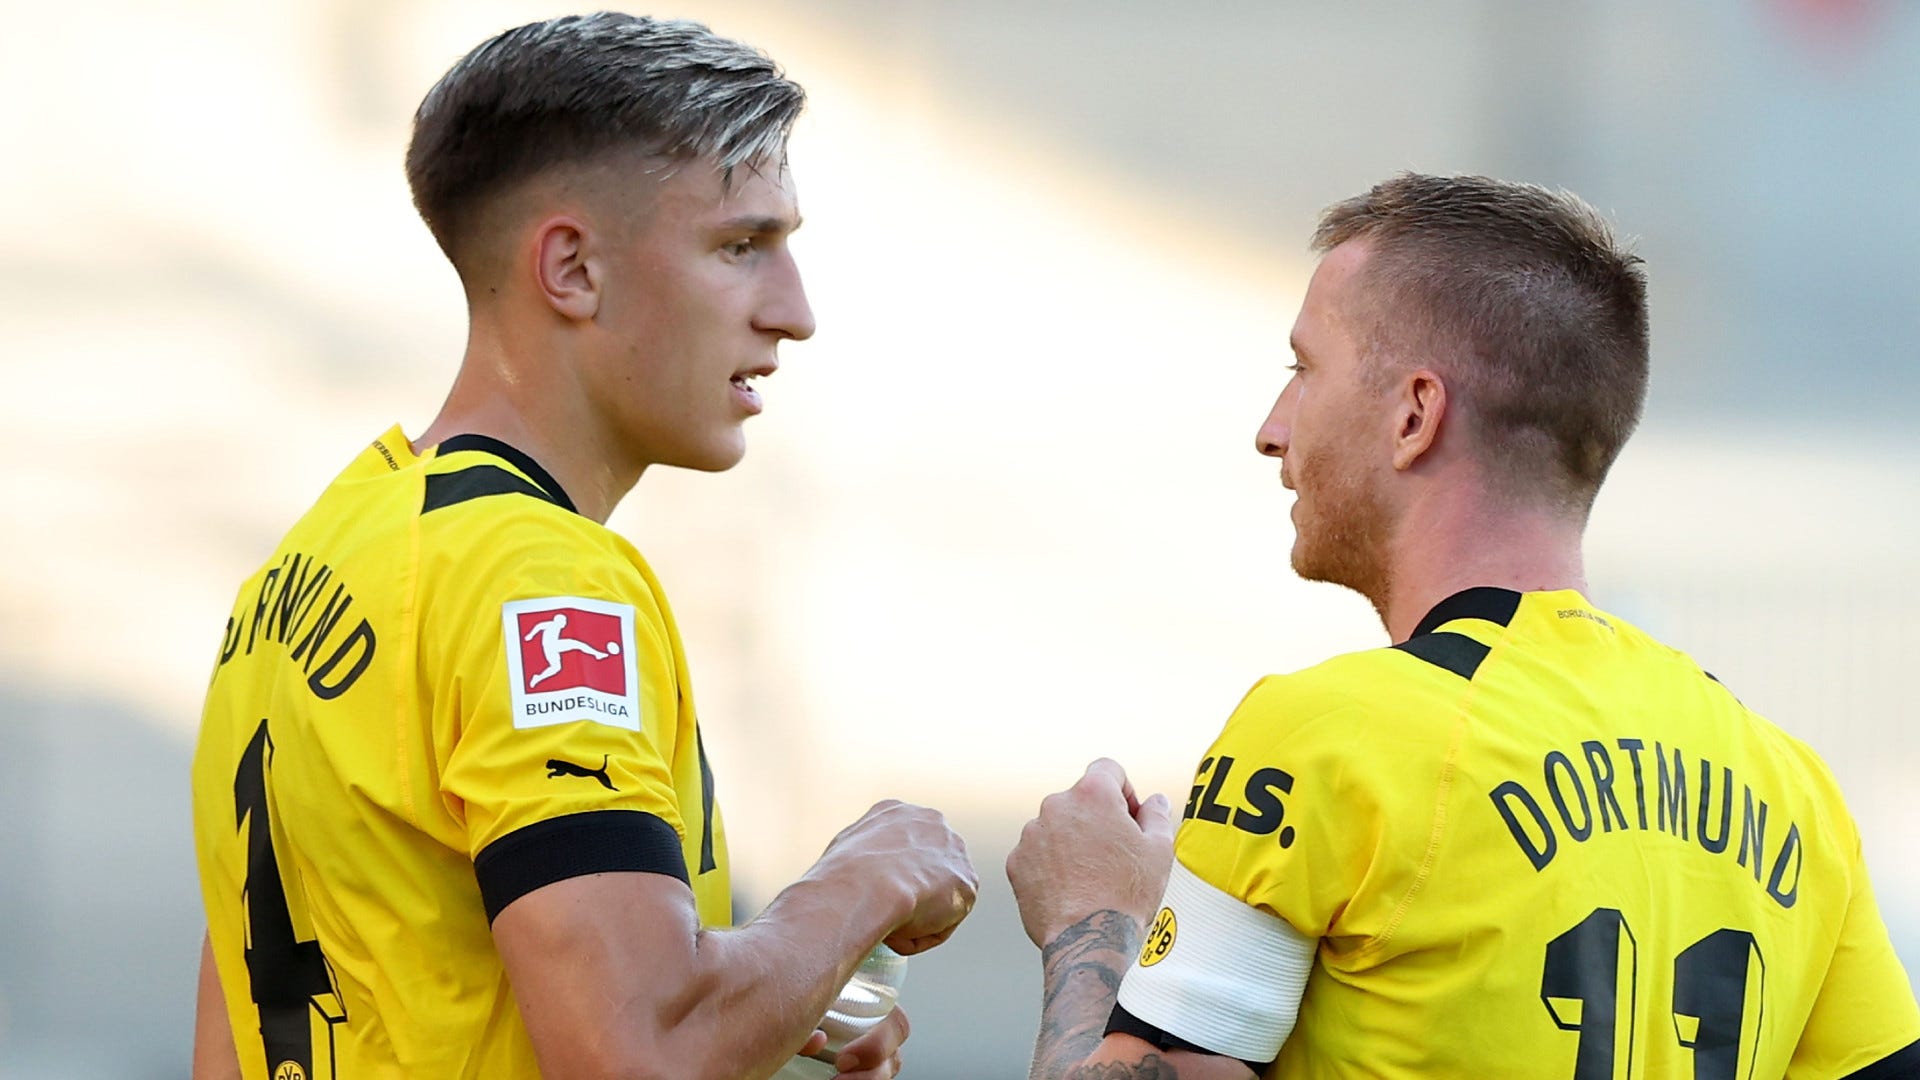 Wer zeigt / überträgt BVB (Borussia Dortmund) vs